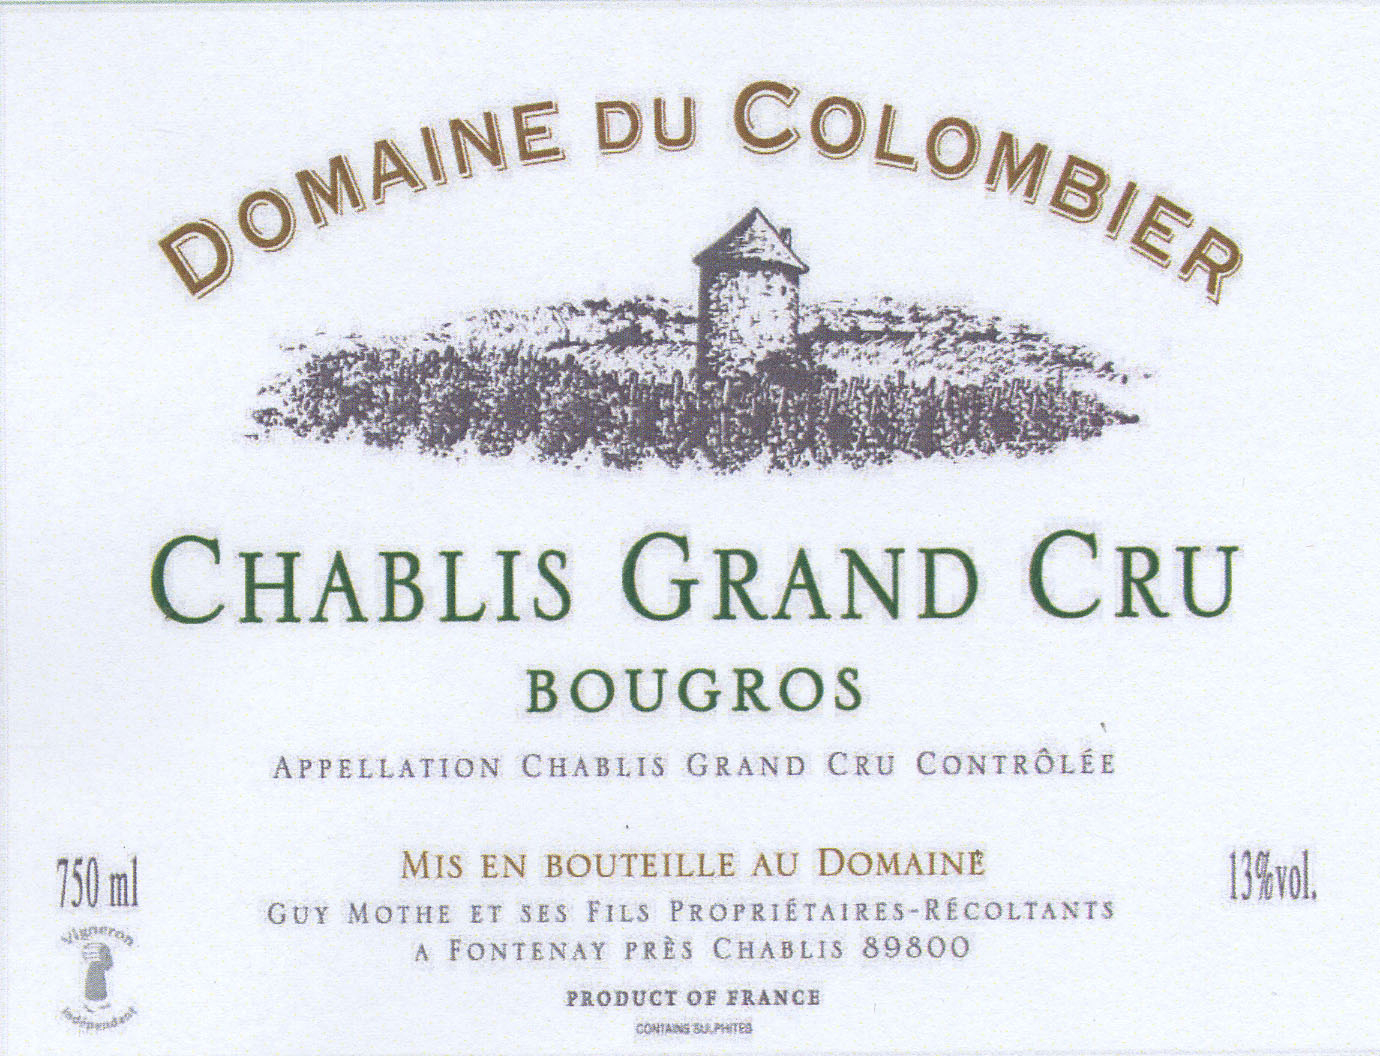 Domaine du Colombier - Chablis Grand Cru Bougros label